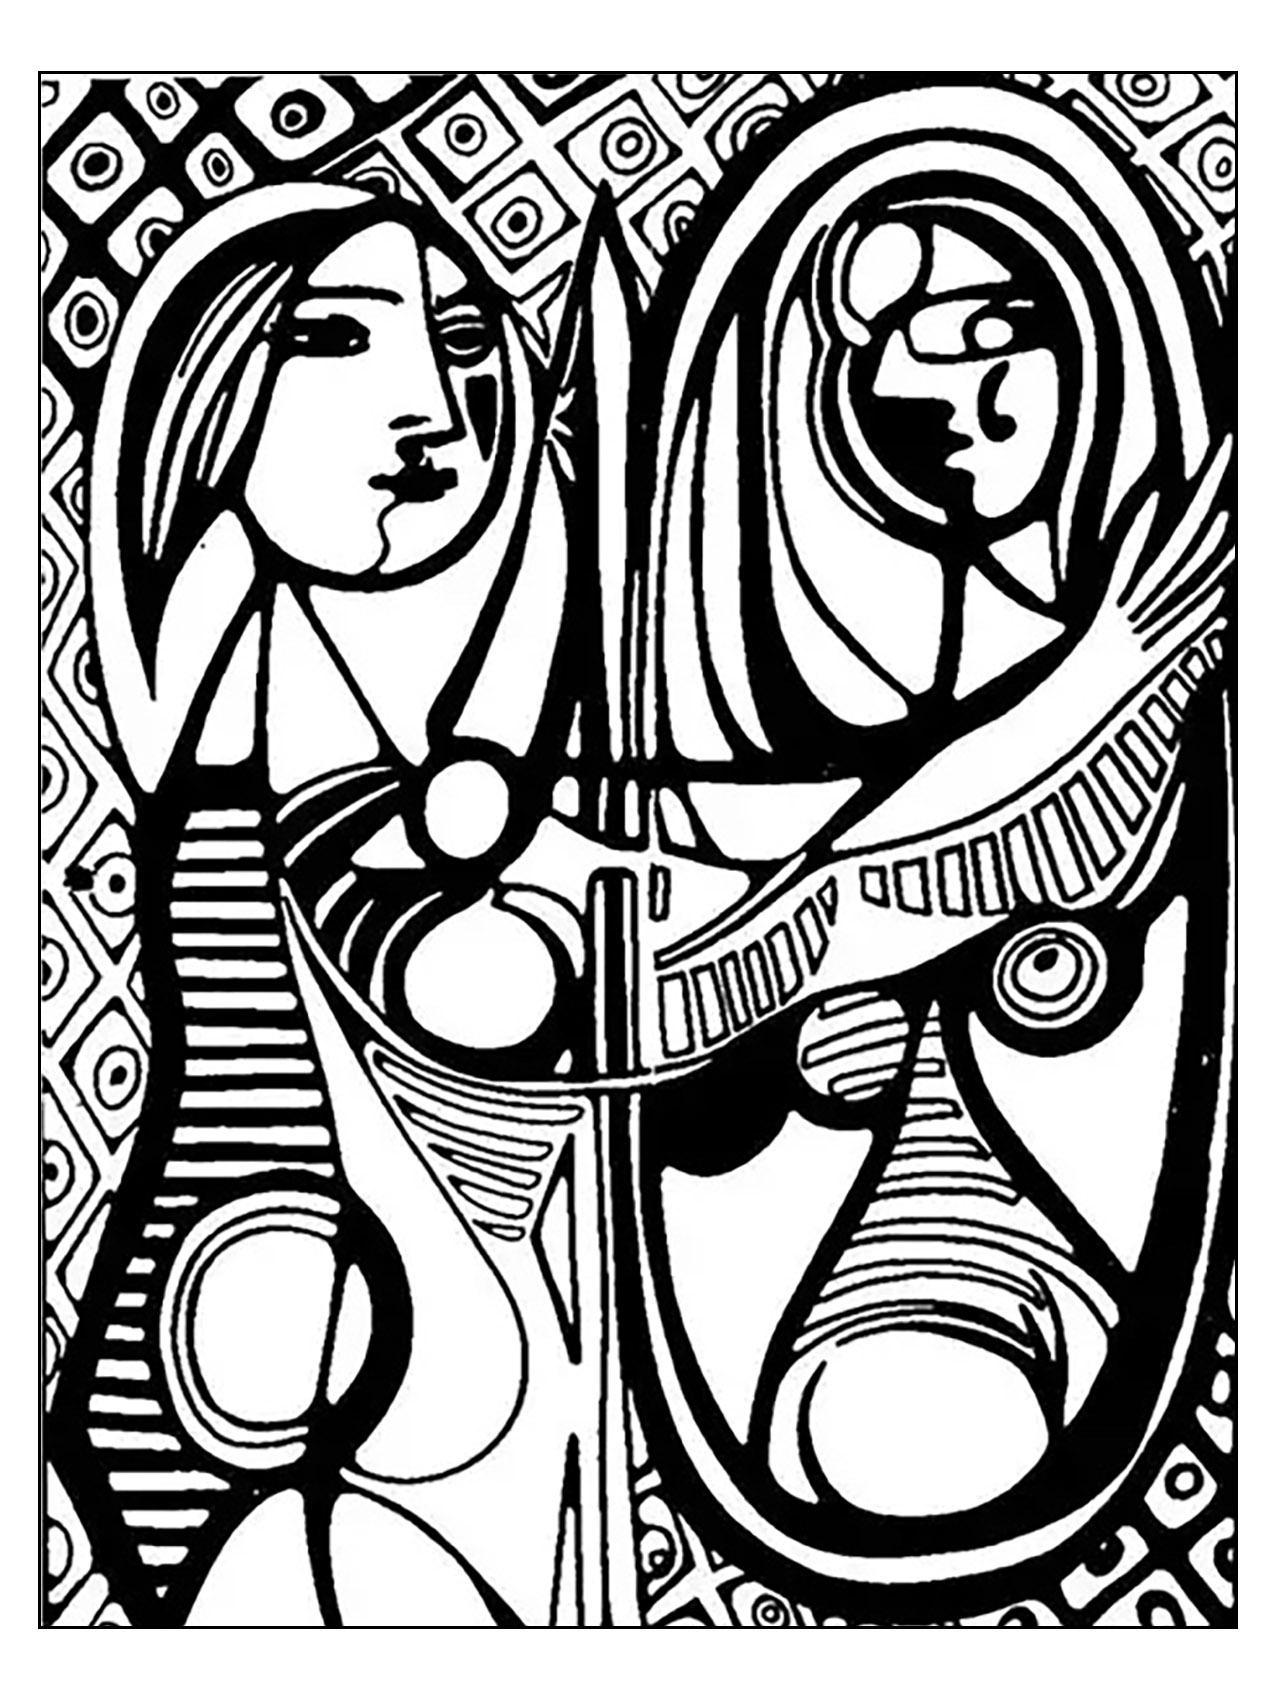 Malvorlage inspiriert von 'Mädchen vor einem Spiegel' von Picasso (1932)